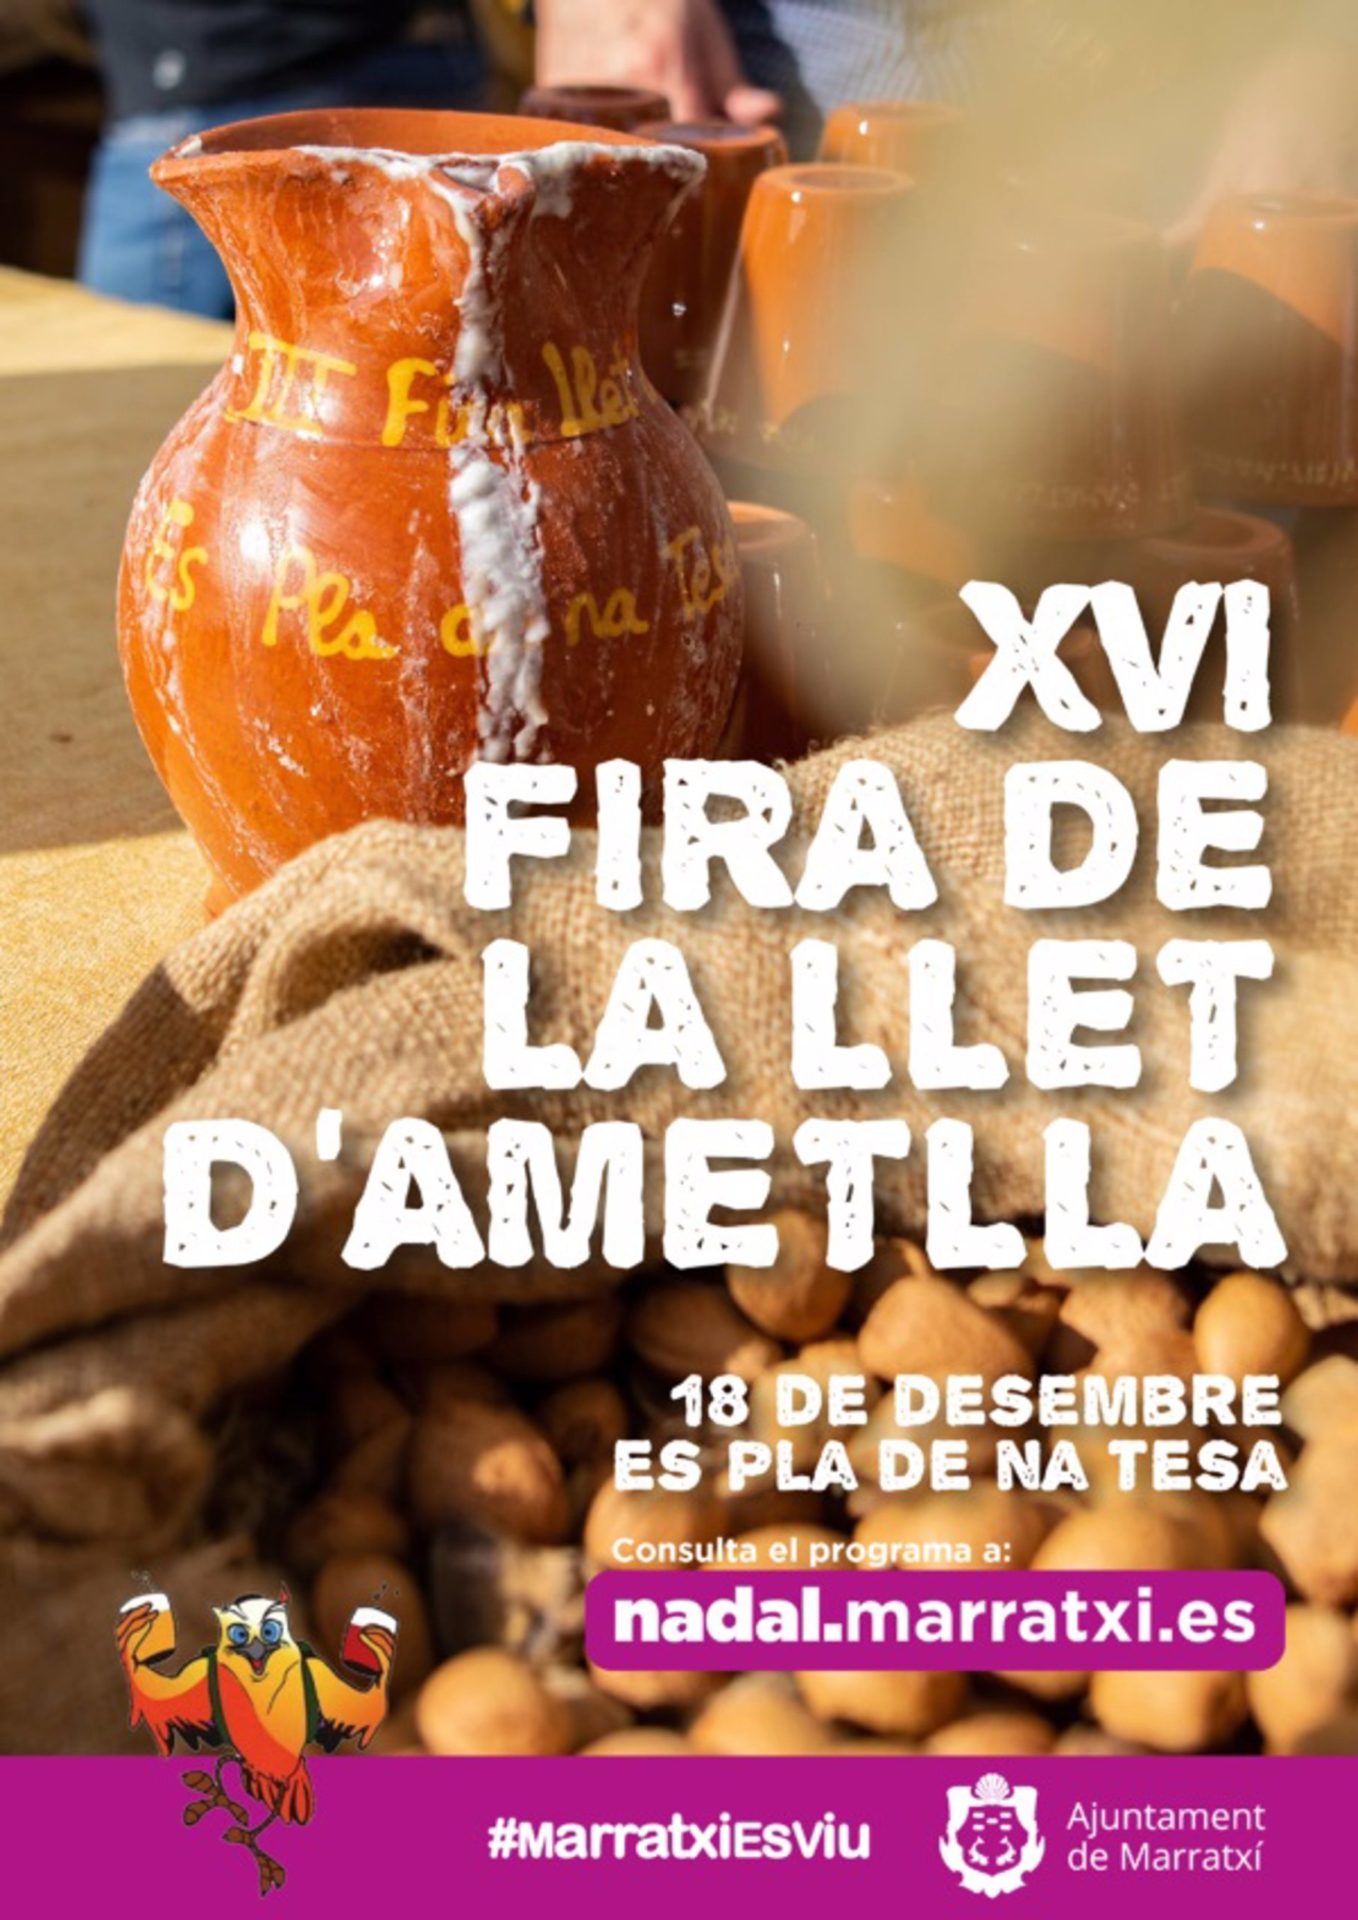 16/12/2022 Cartel de la Feria de la Leche de Almendra.